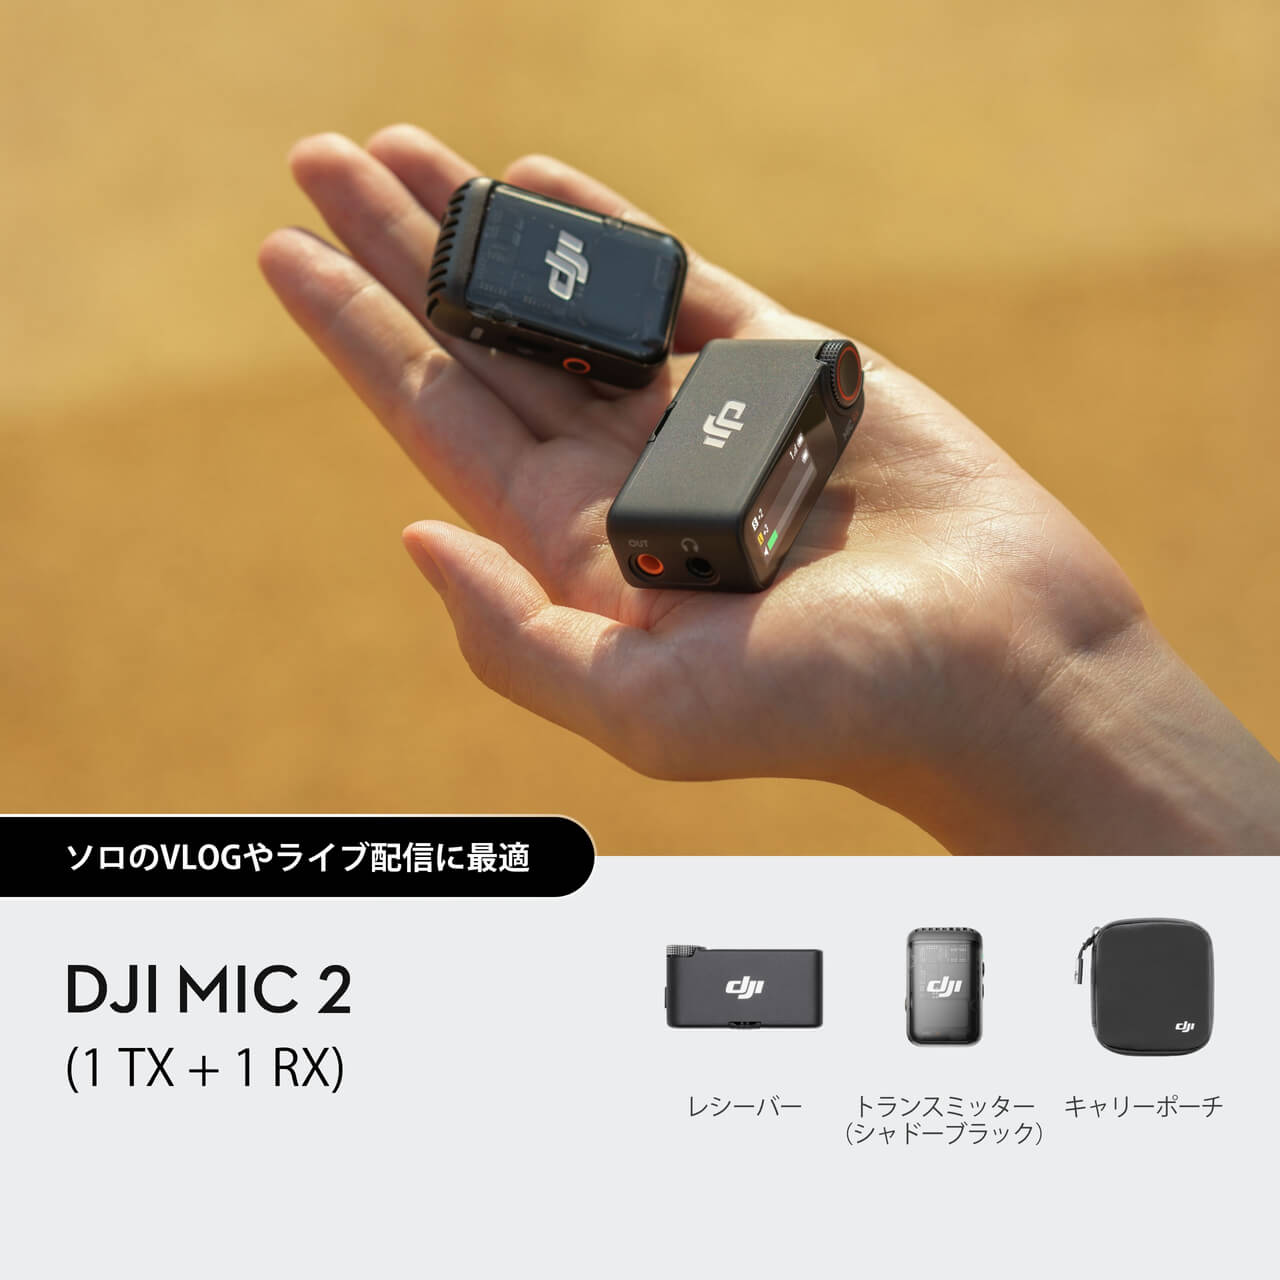 DJI Mic 2(トランスミッター×1 + レシーバー×1)